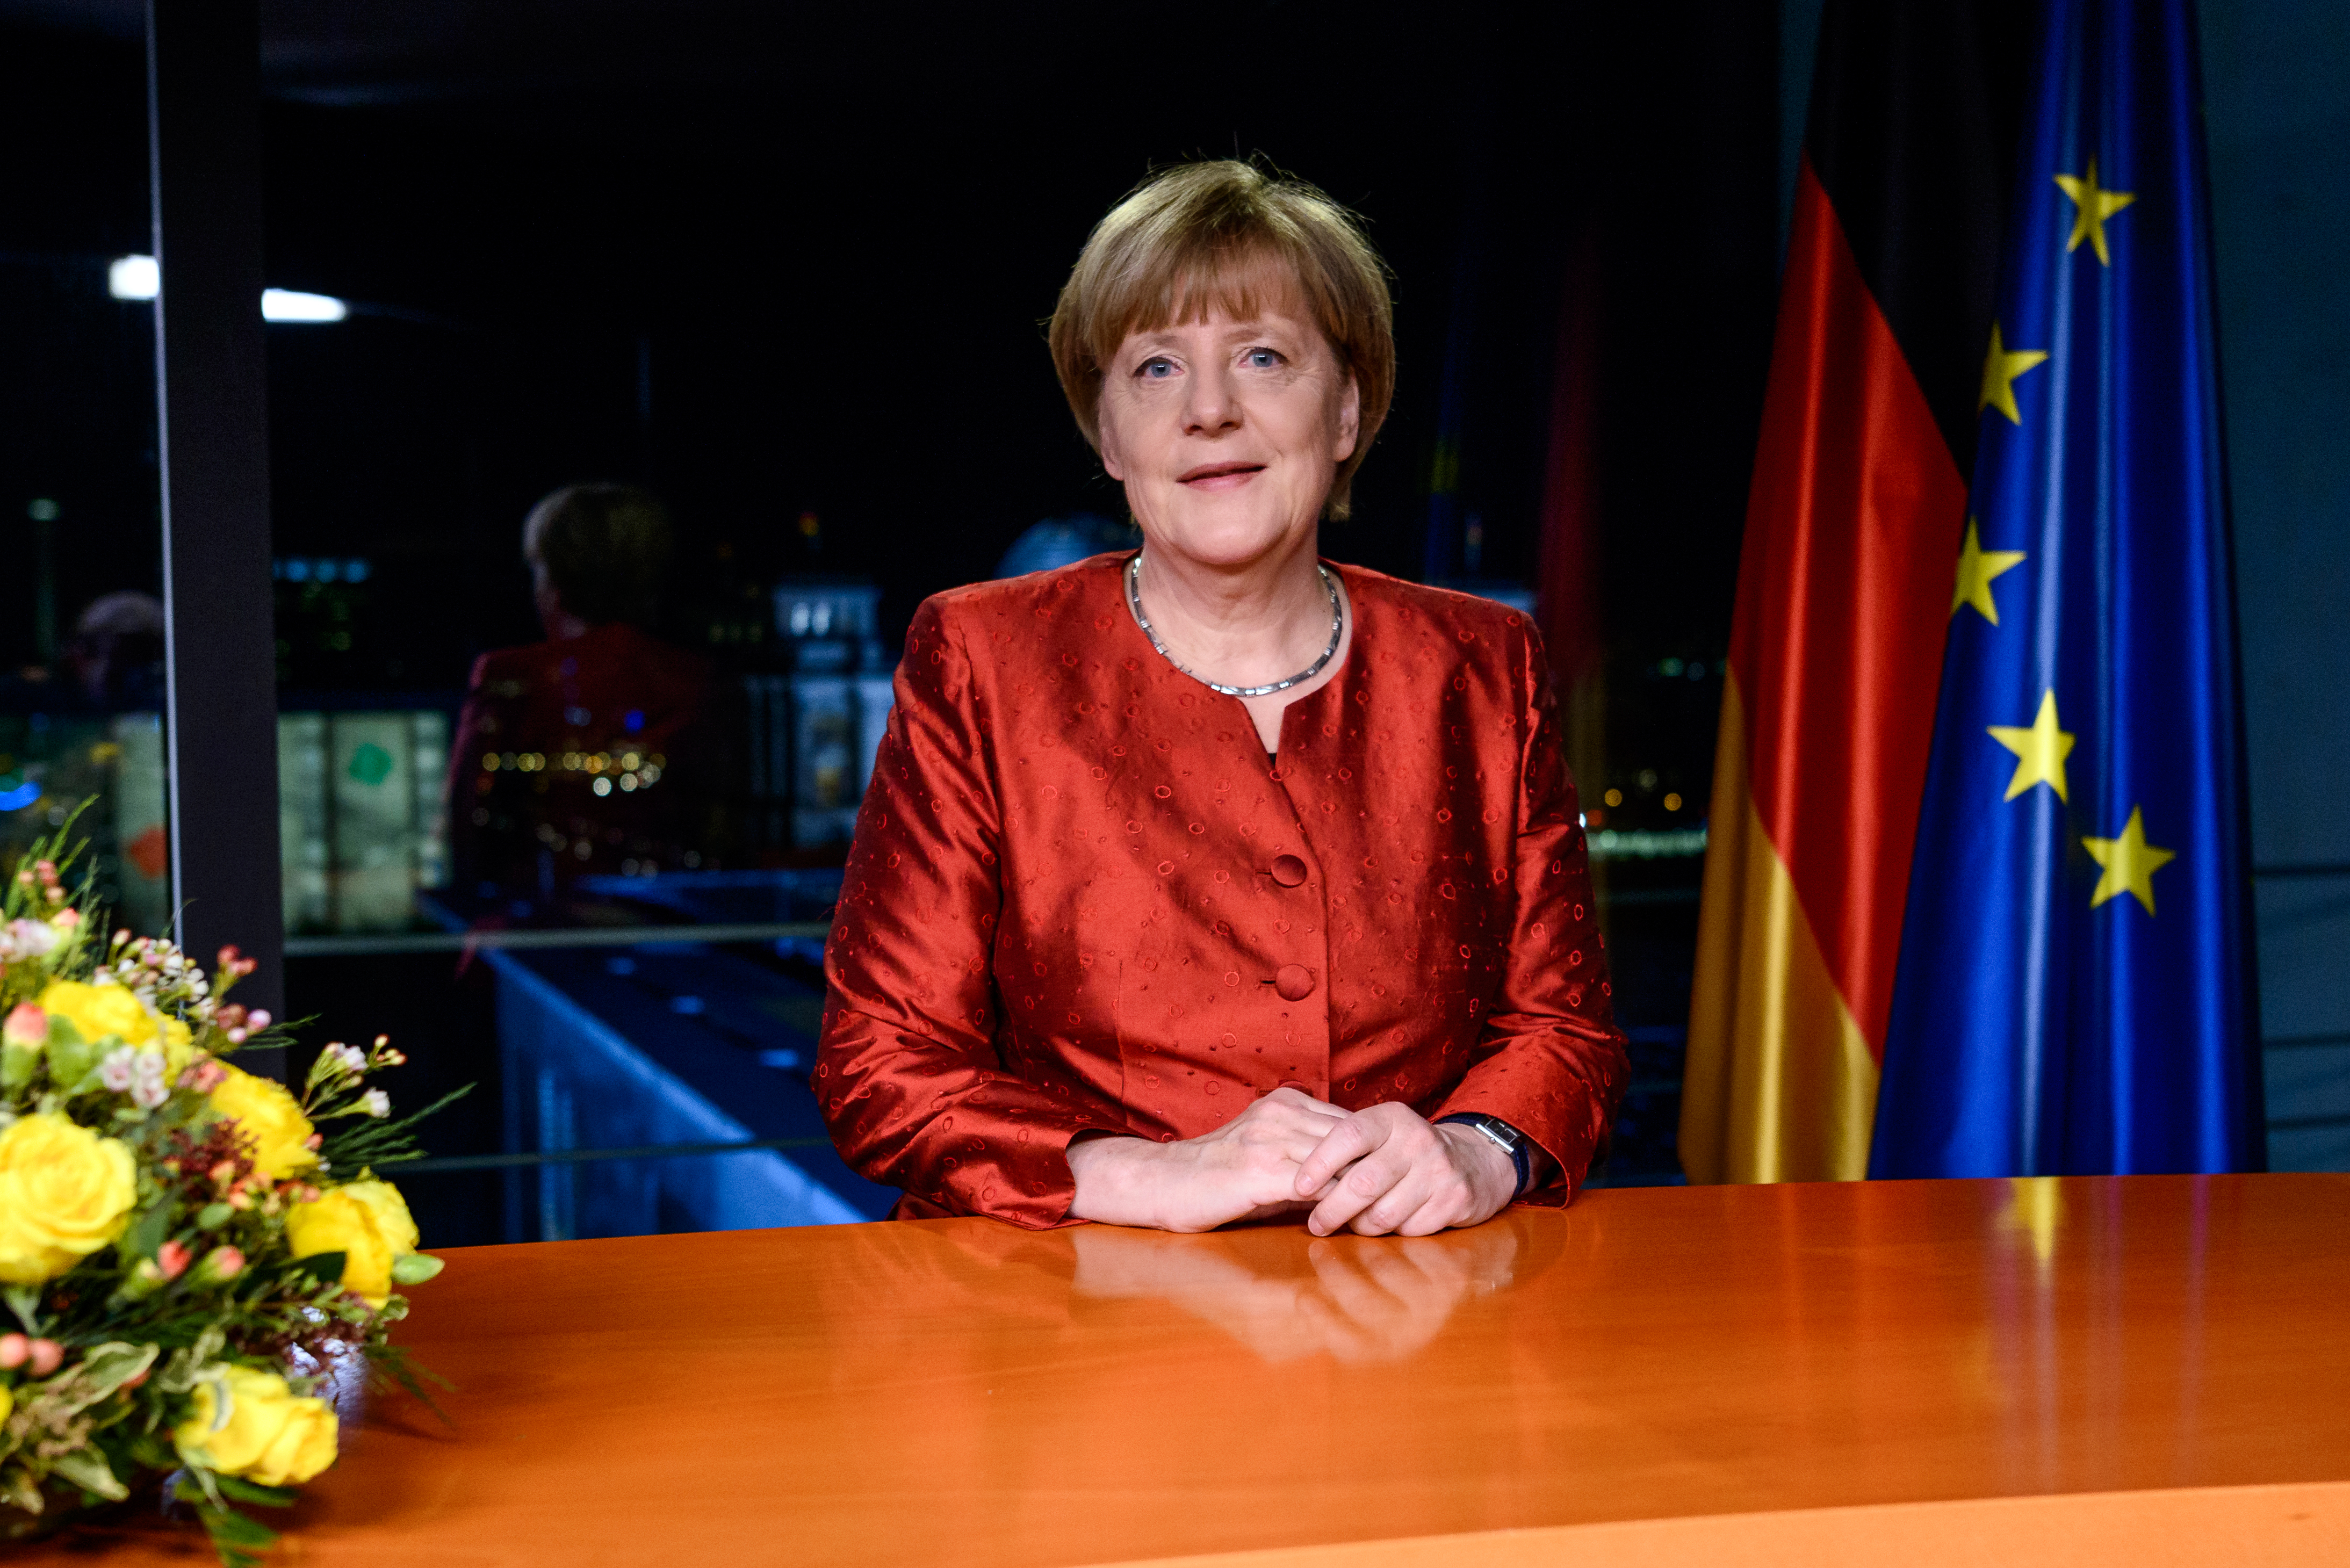 Merkels Neujahrsansprache 2017 vorab veröffentlicht: Sie ruft Deutsche zu Zuversicht für 2017 auf – „Gemeinsam sind wir stärker. Unser Staat ist stärker.“